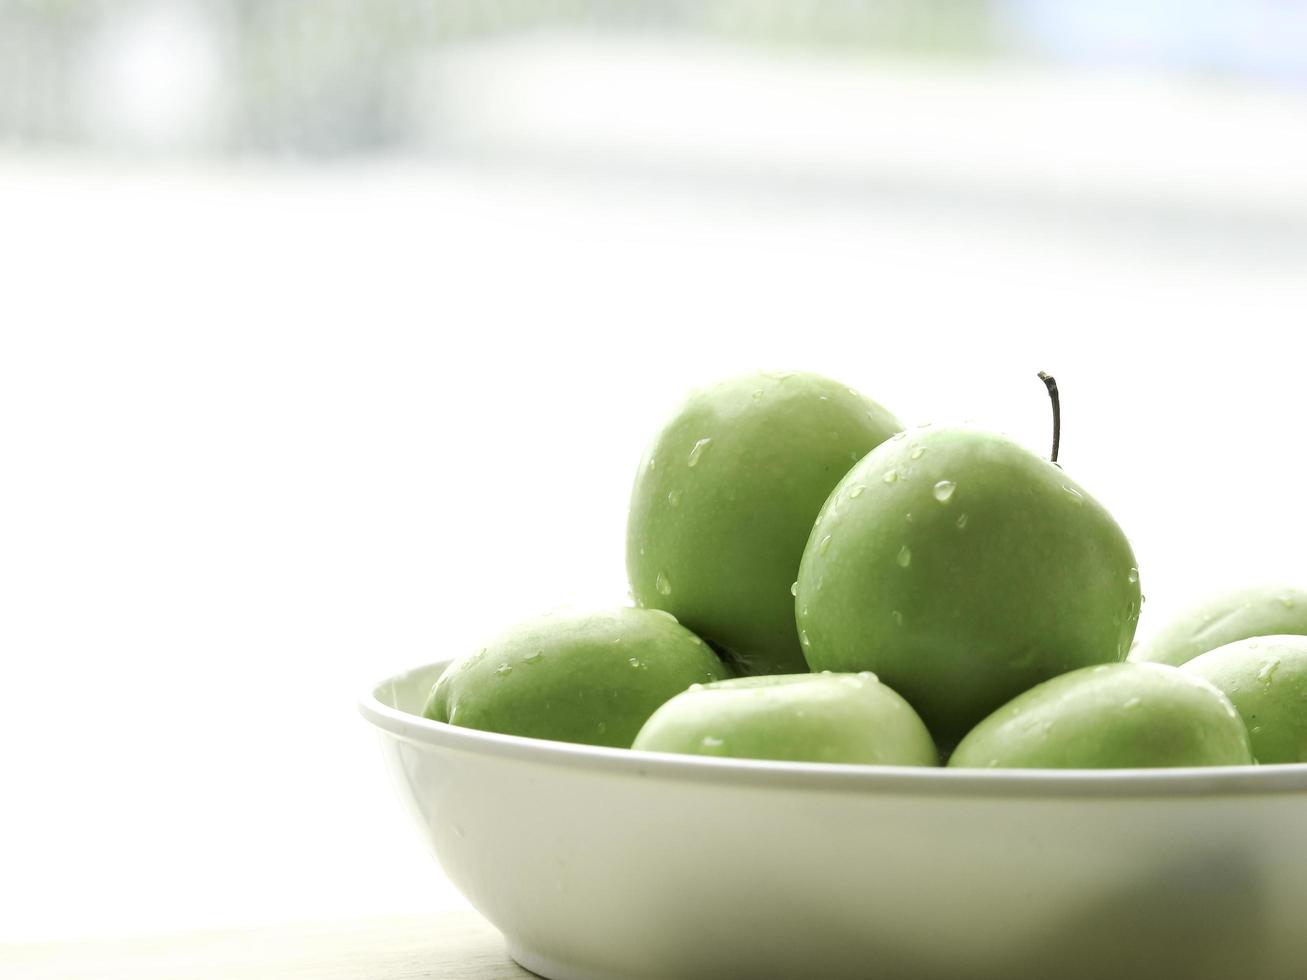 rijpe groene appel rauw fruit in witte kom op houten tafel, gezonde biologische verse producten foto